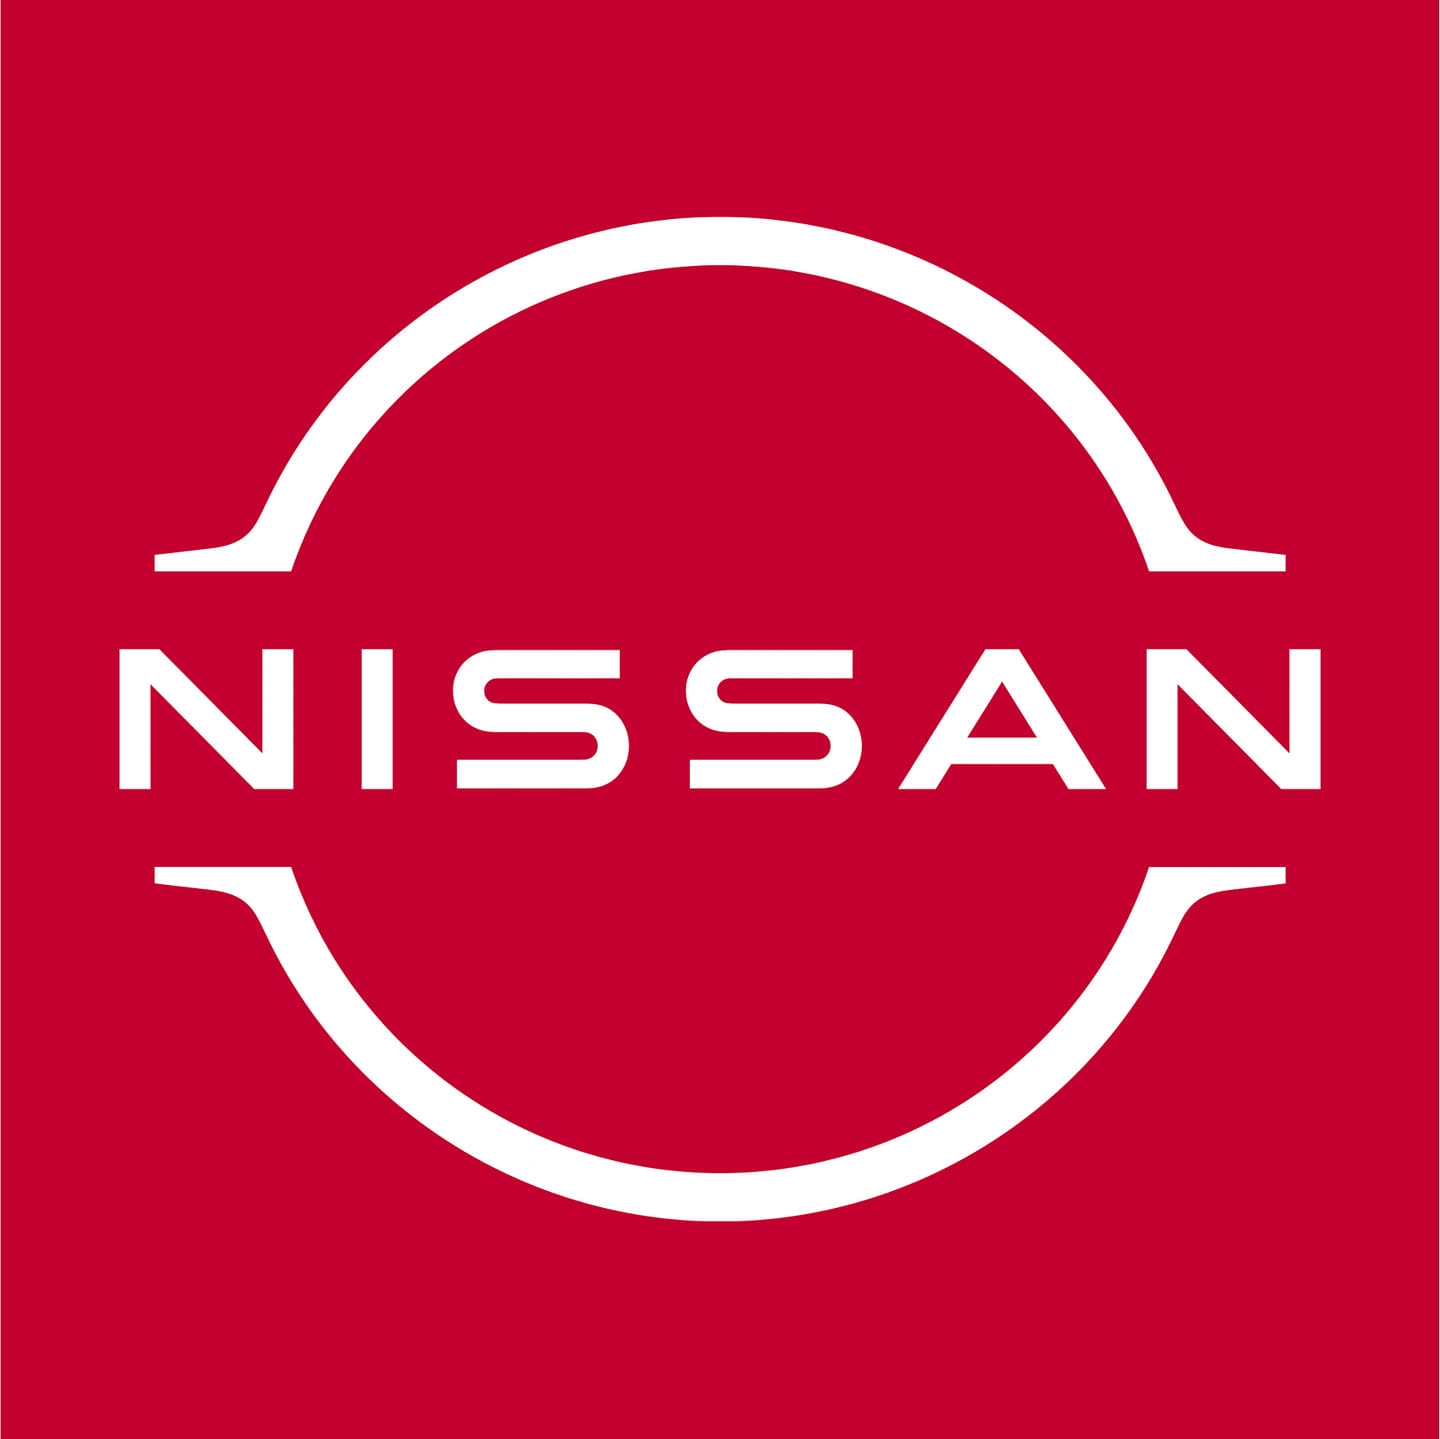 BHASKAR NISSAN - Logo